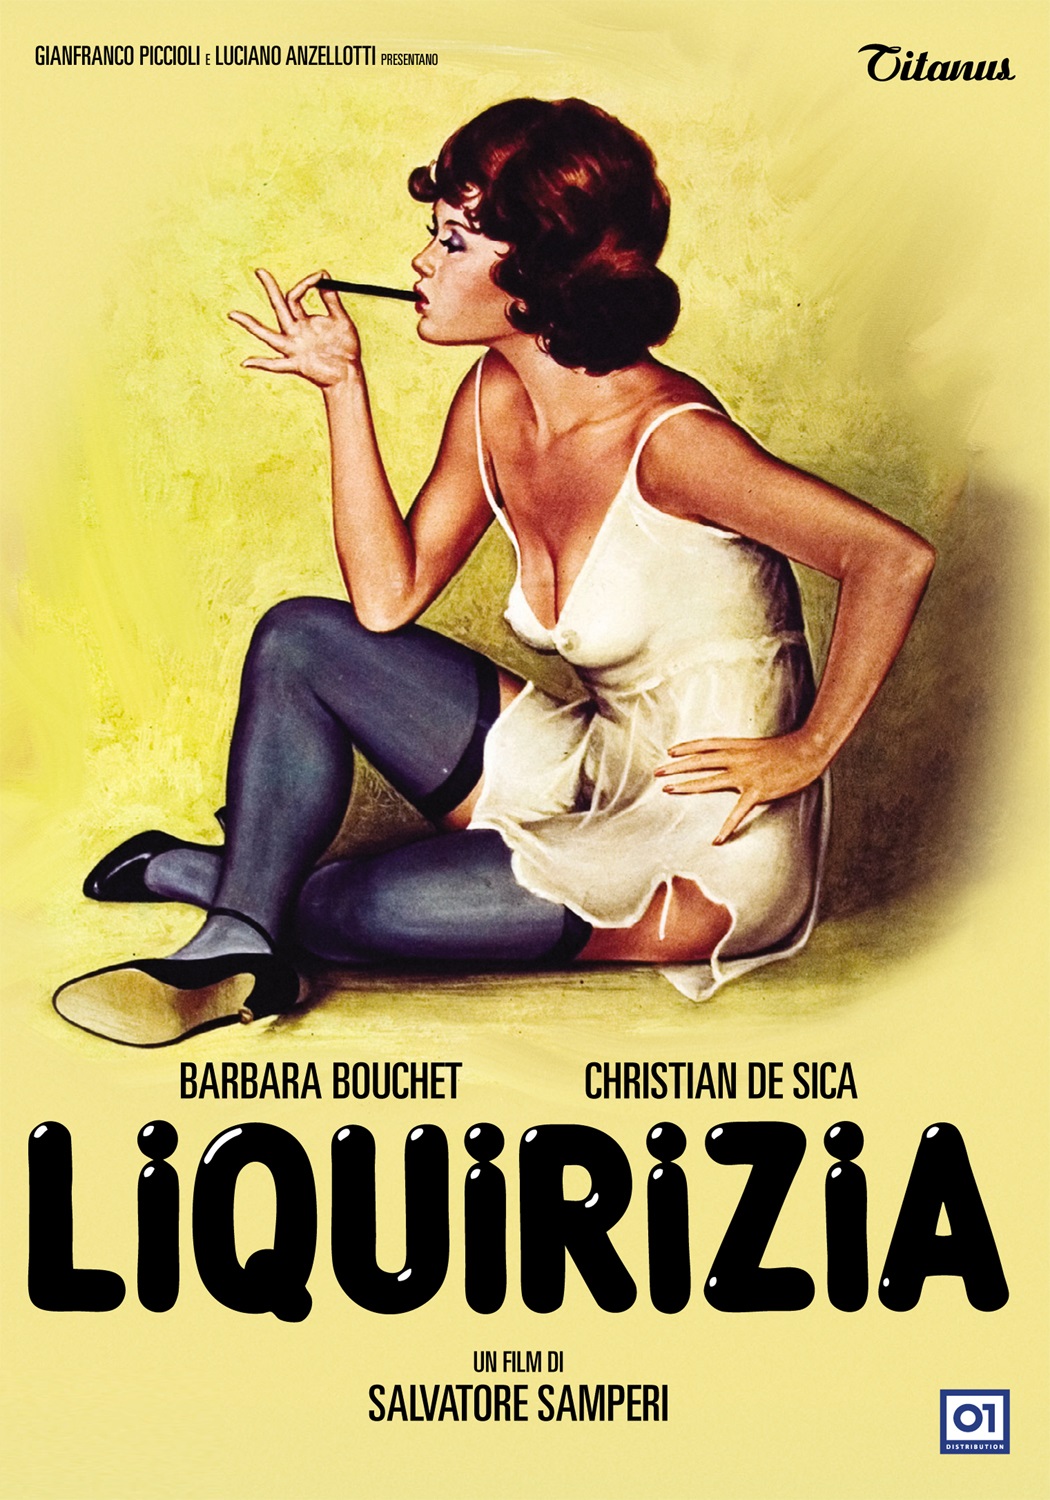 Liquirizia (1979)